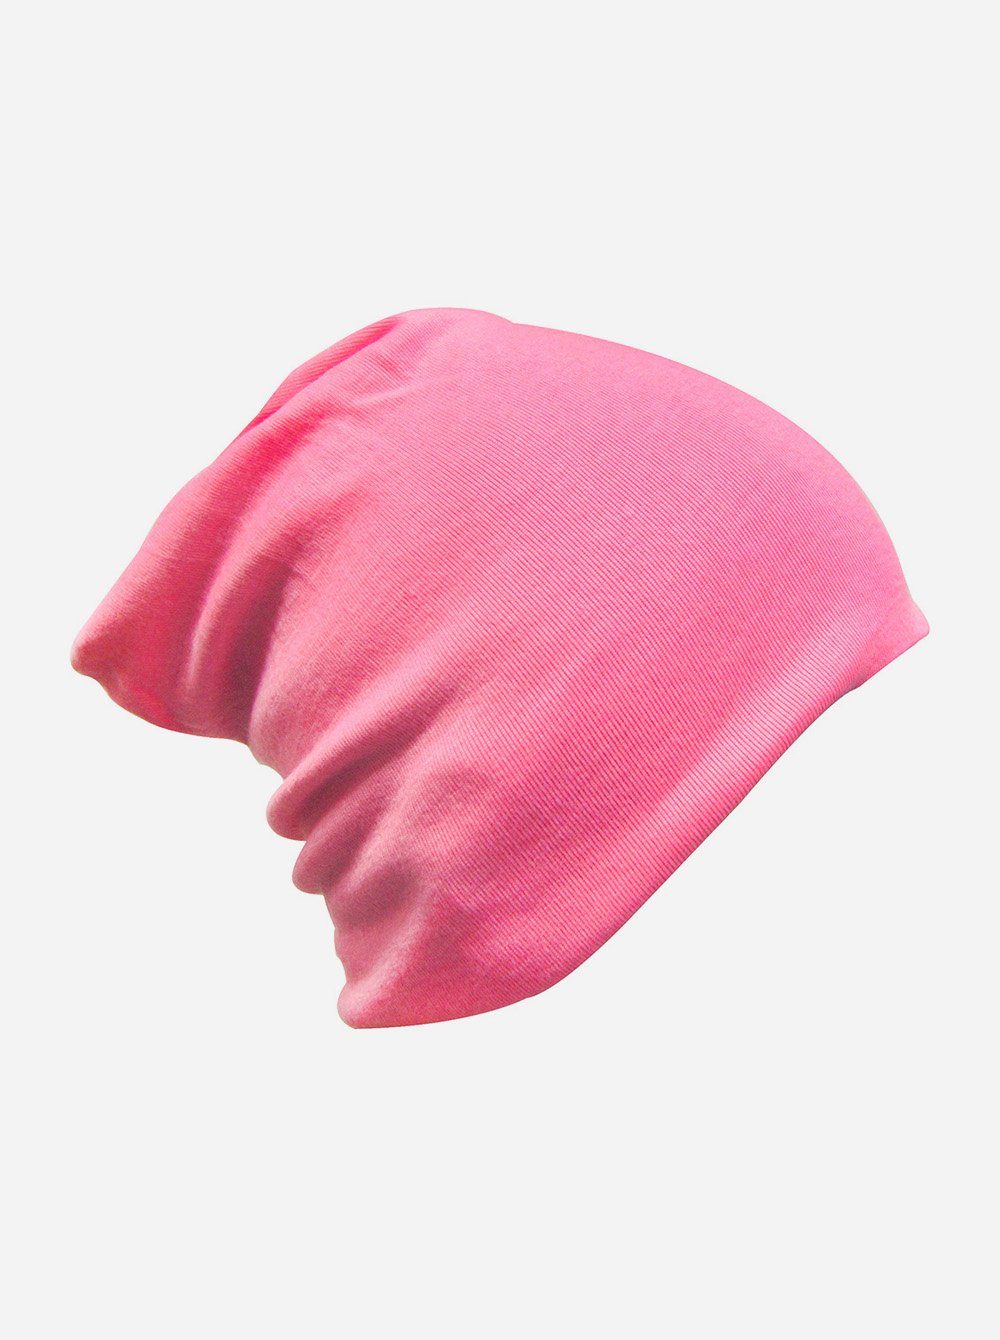 axy Beanie Kinder Slouch Beanie Long Mütze 1-5 Jahren Mütze für Jungen Mädchen Kleinkind Unisex Unifarbe Pink